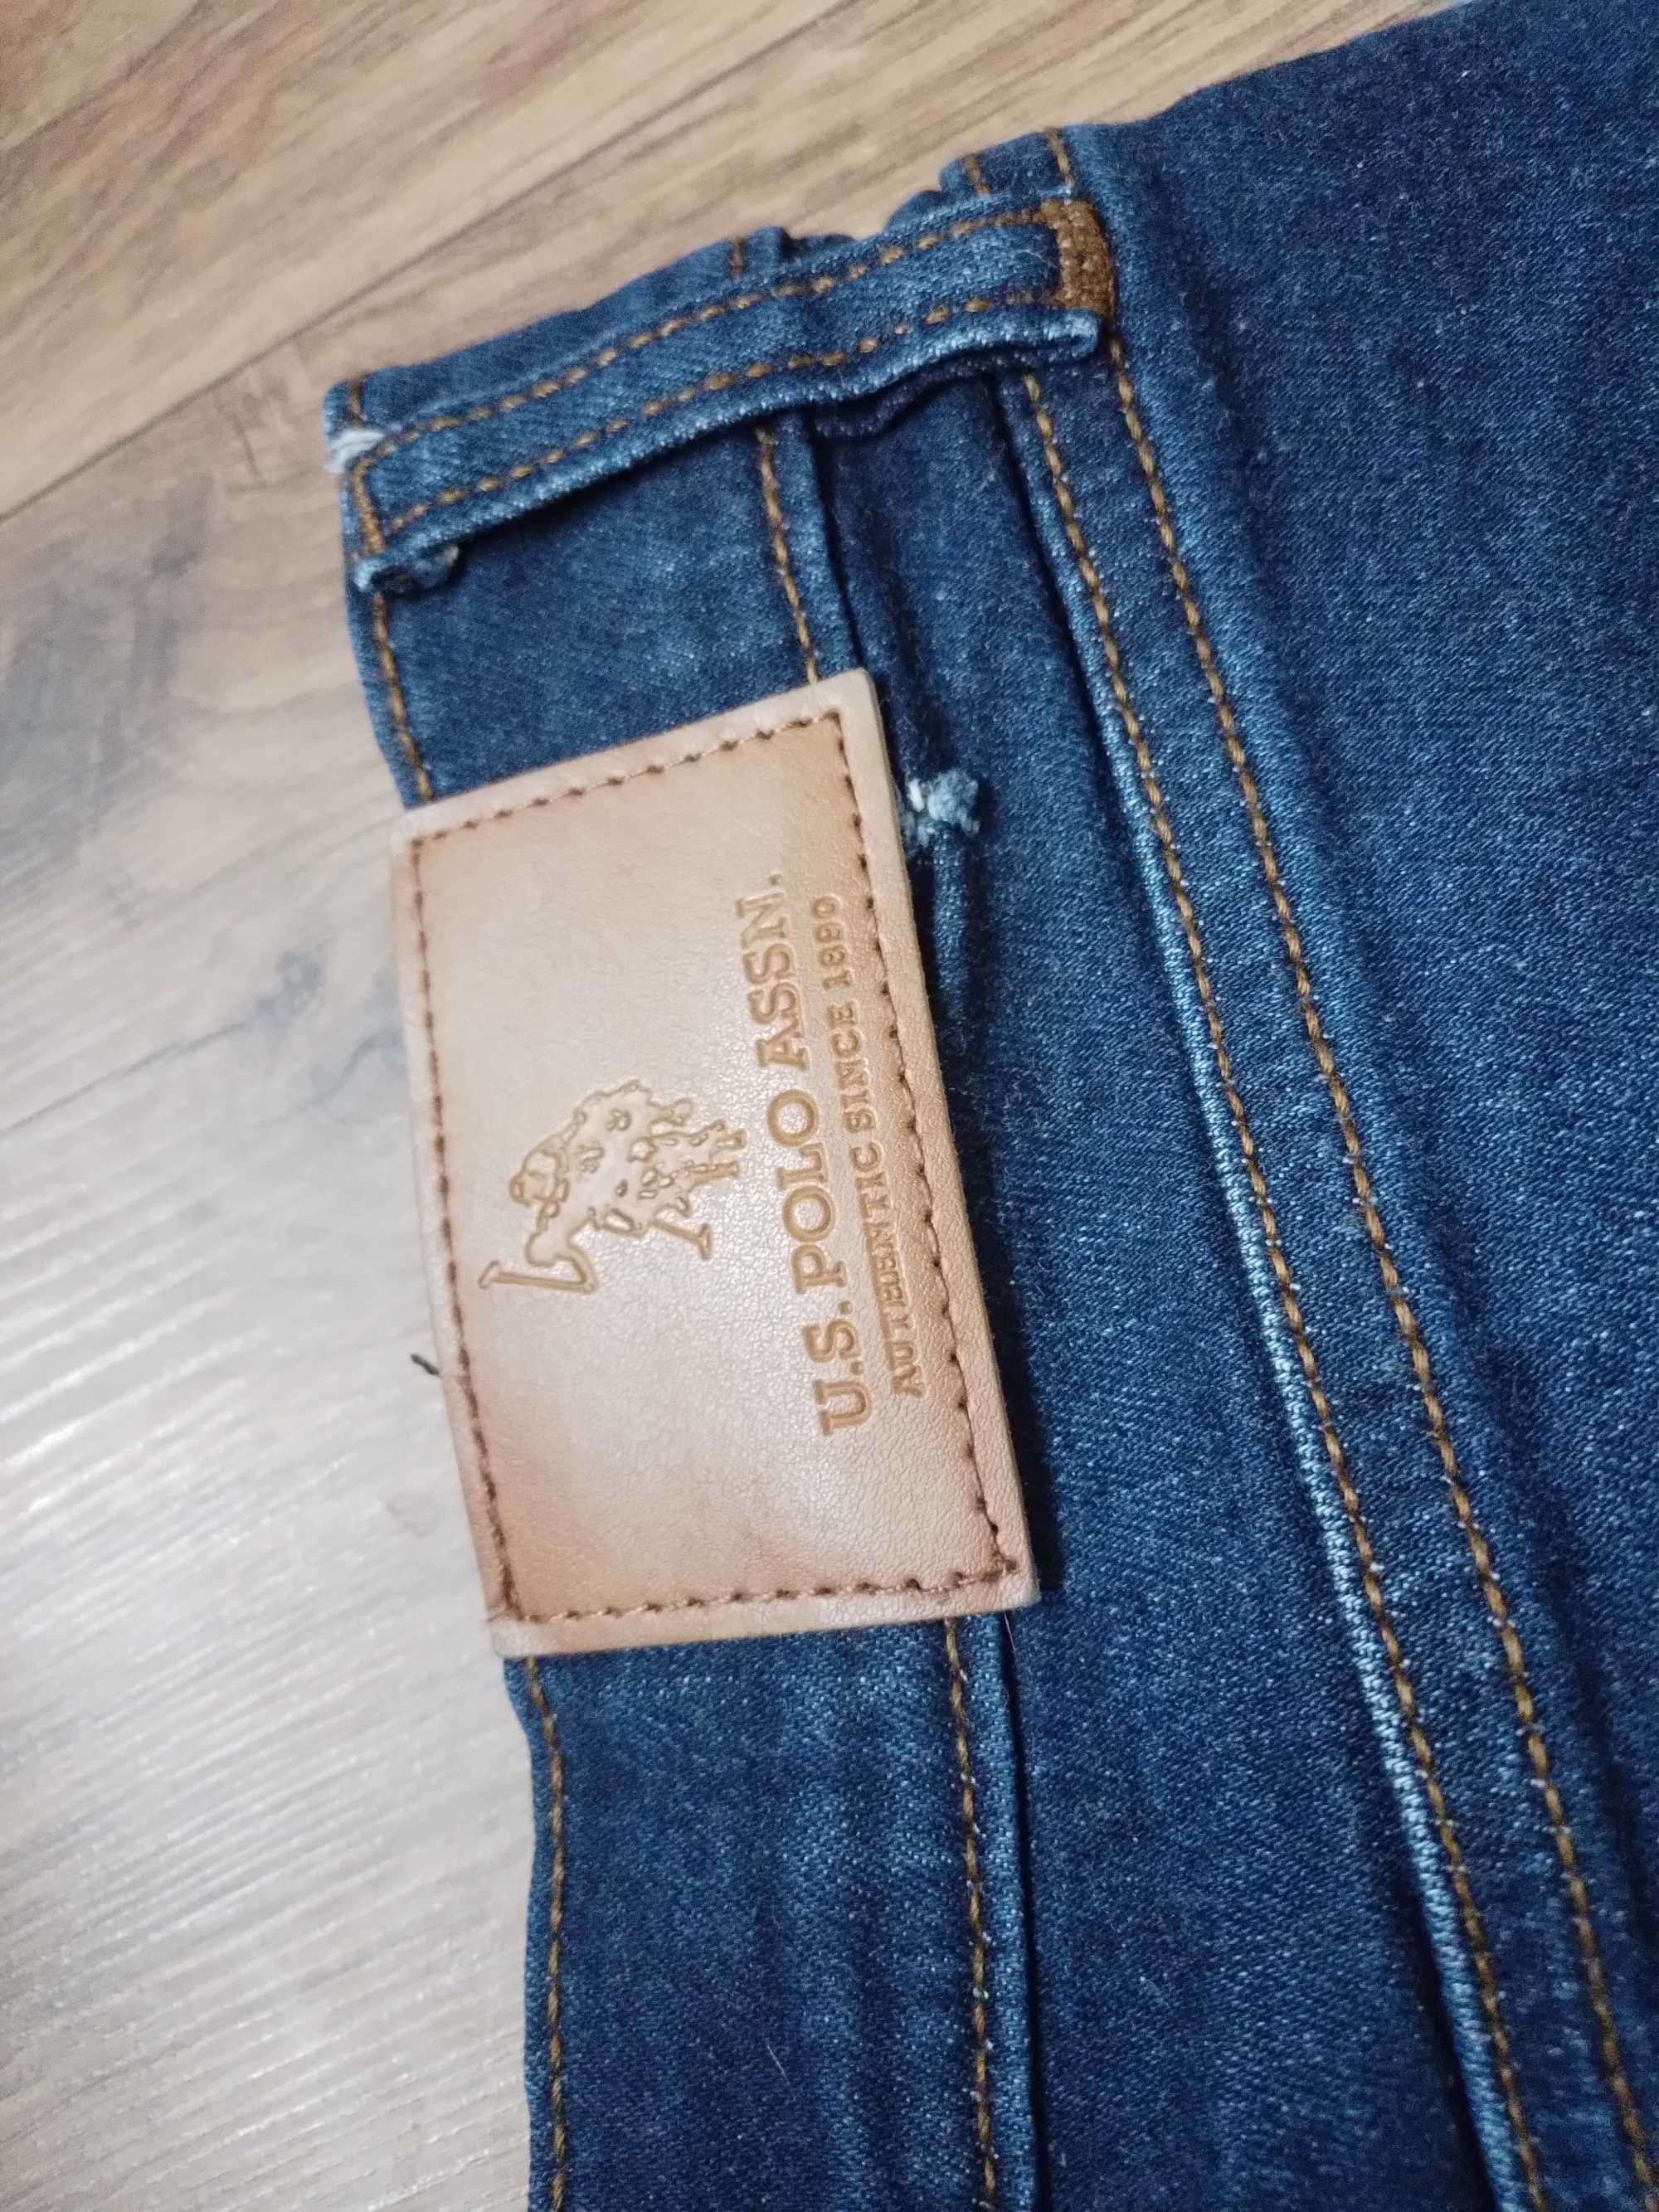 Spodnie meskie jeans u.s. polo assn 34